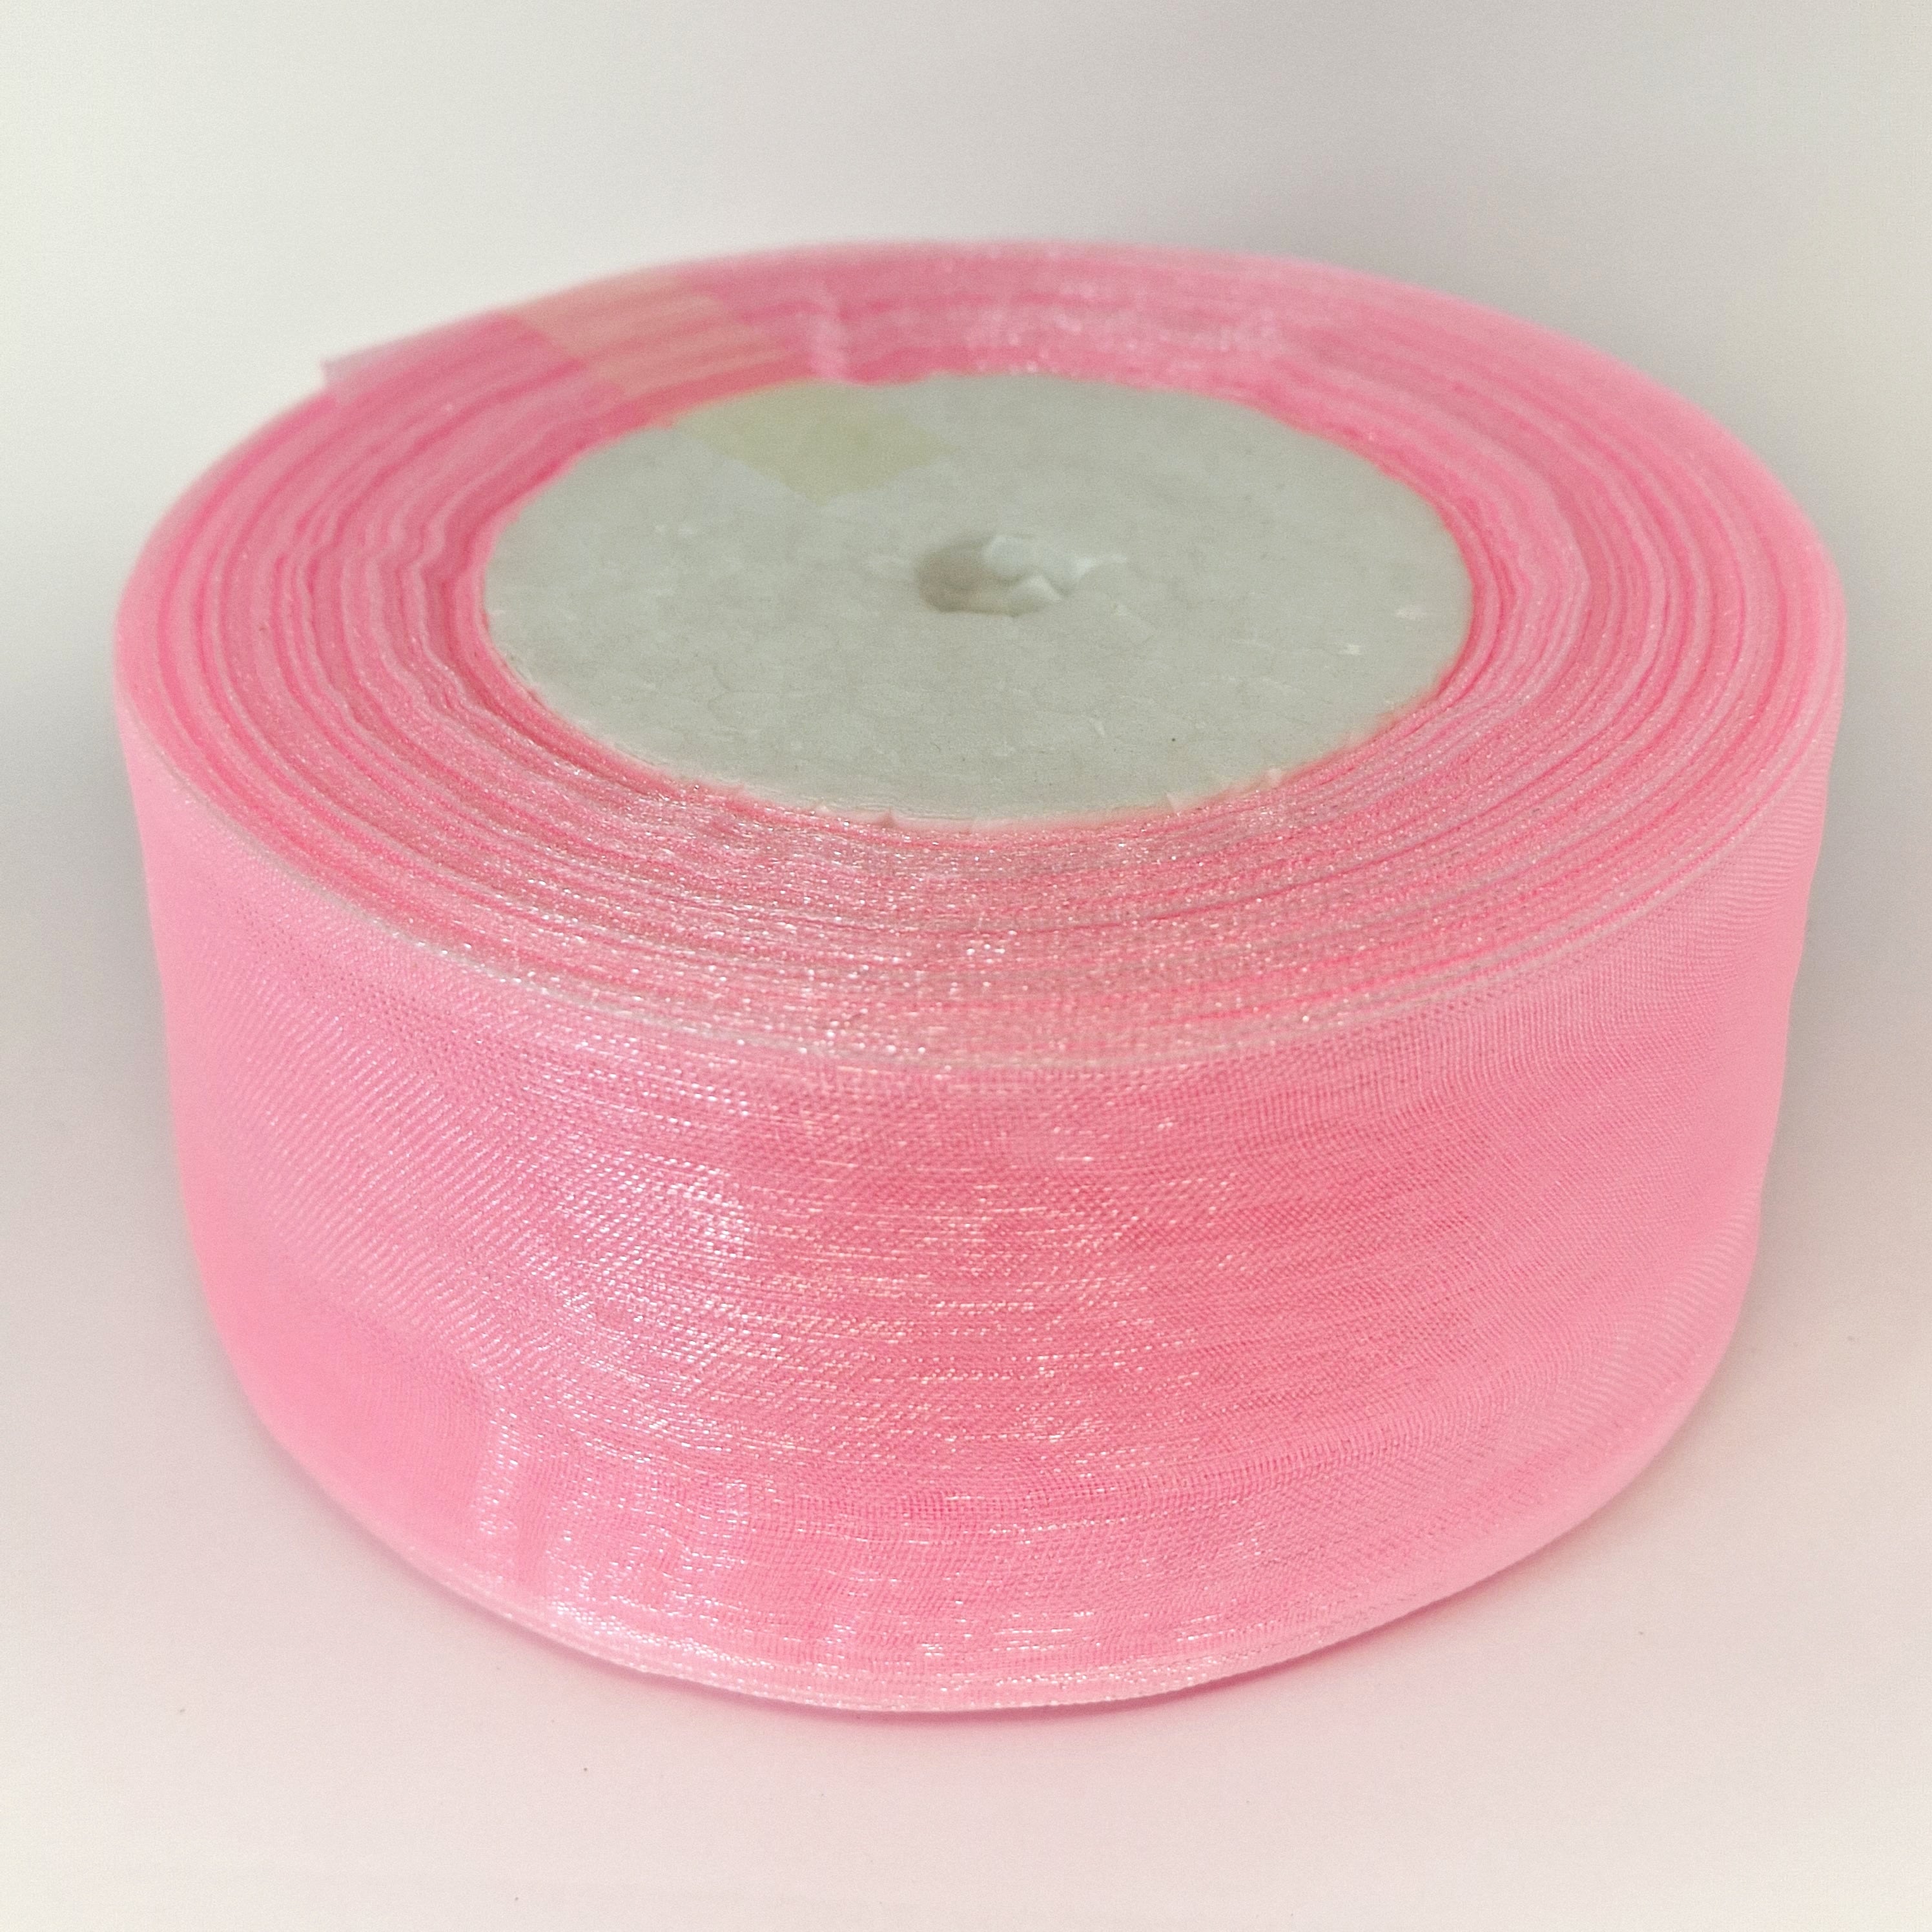 MajorCrafts 50mm 45metres Sheer Organza Fabric Ribbon Roll Light Pink Shade R1004